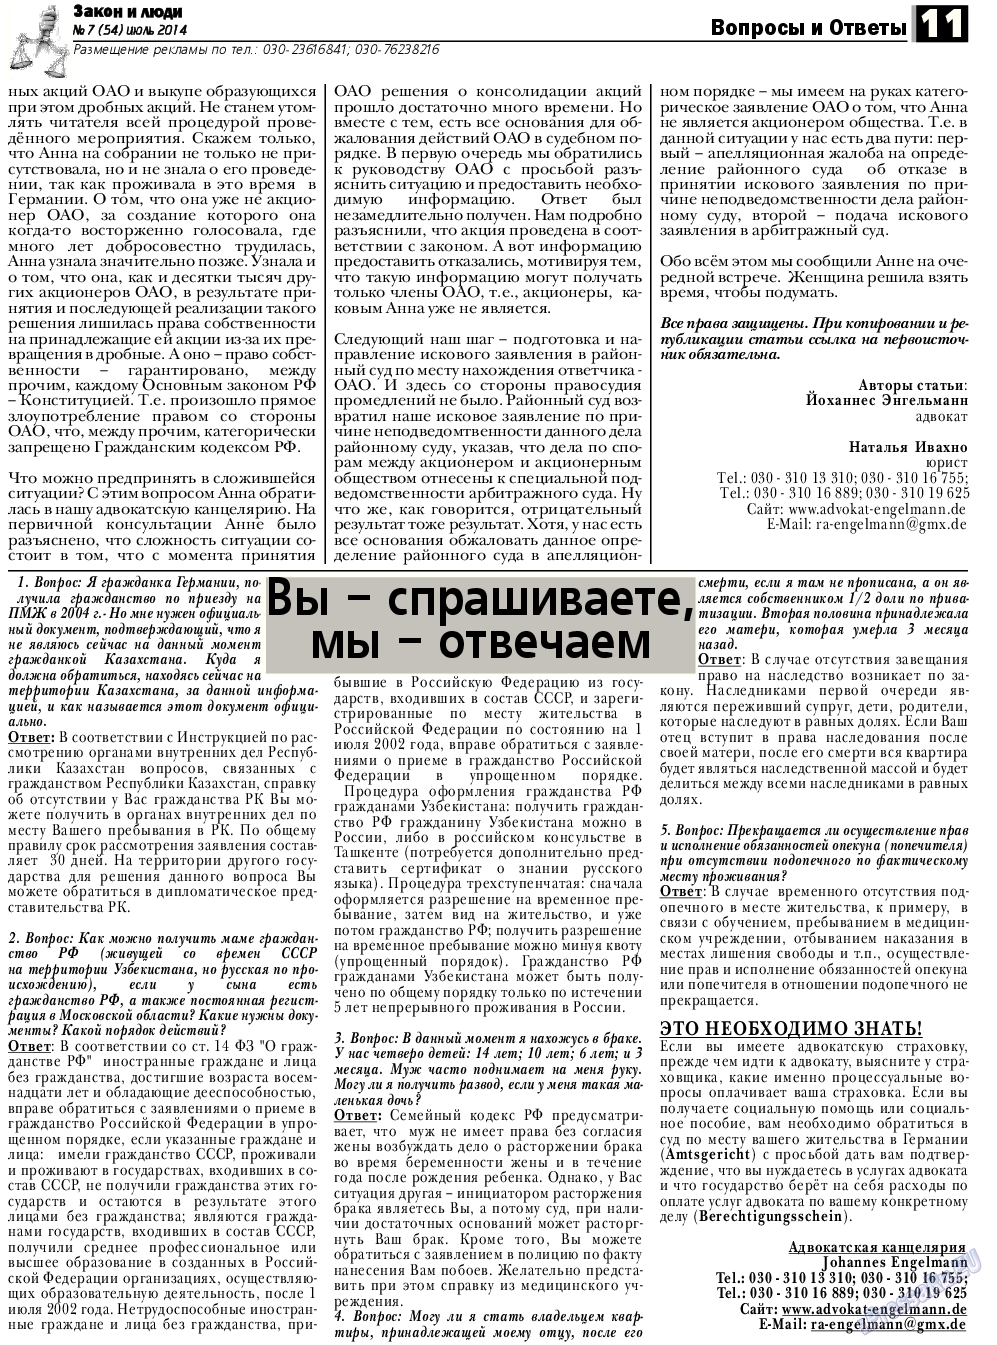 Закон и люди, газета. 2014 №7 стр.11